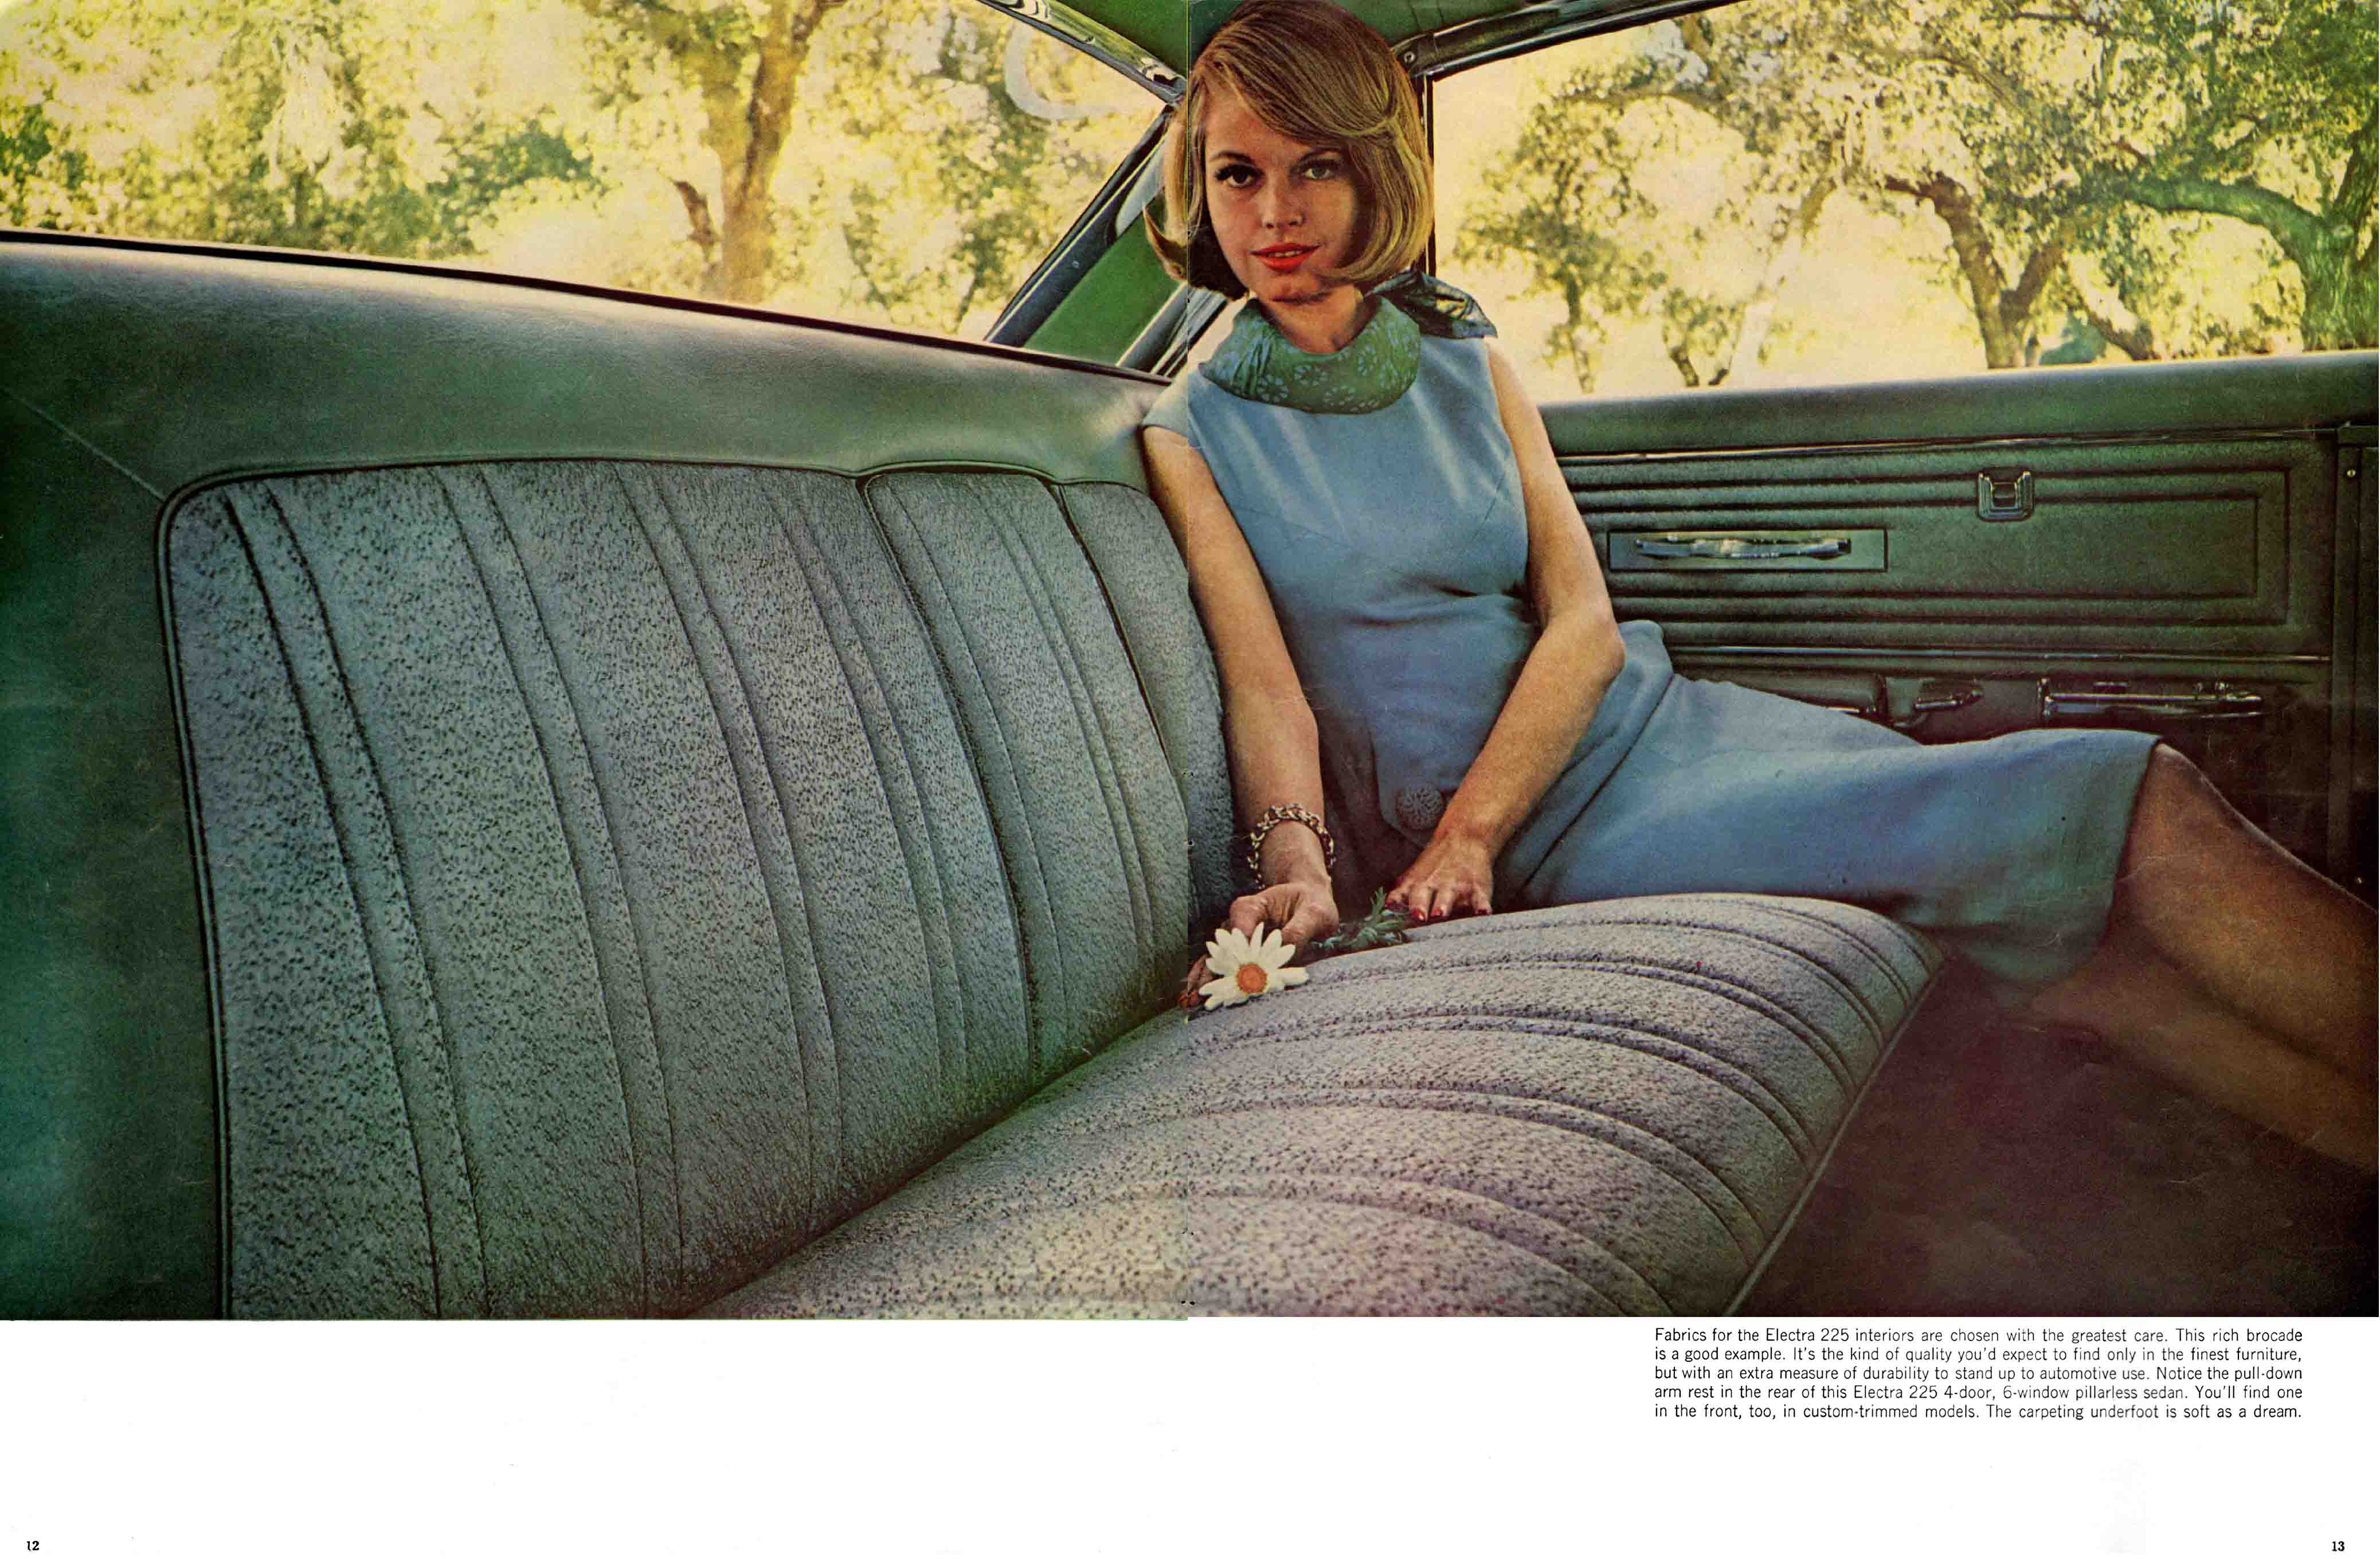 1964 Buick Full Line Prestige-12-13